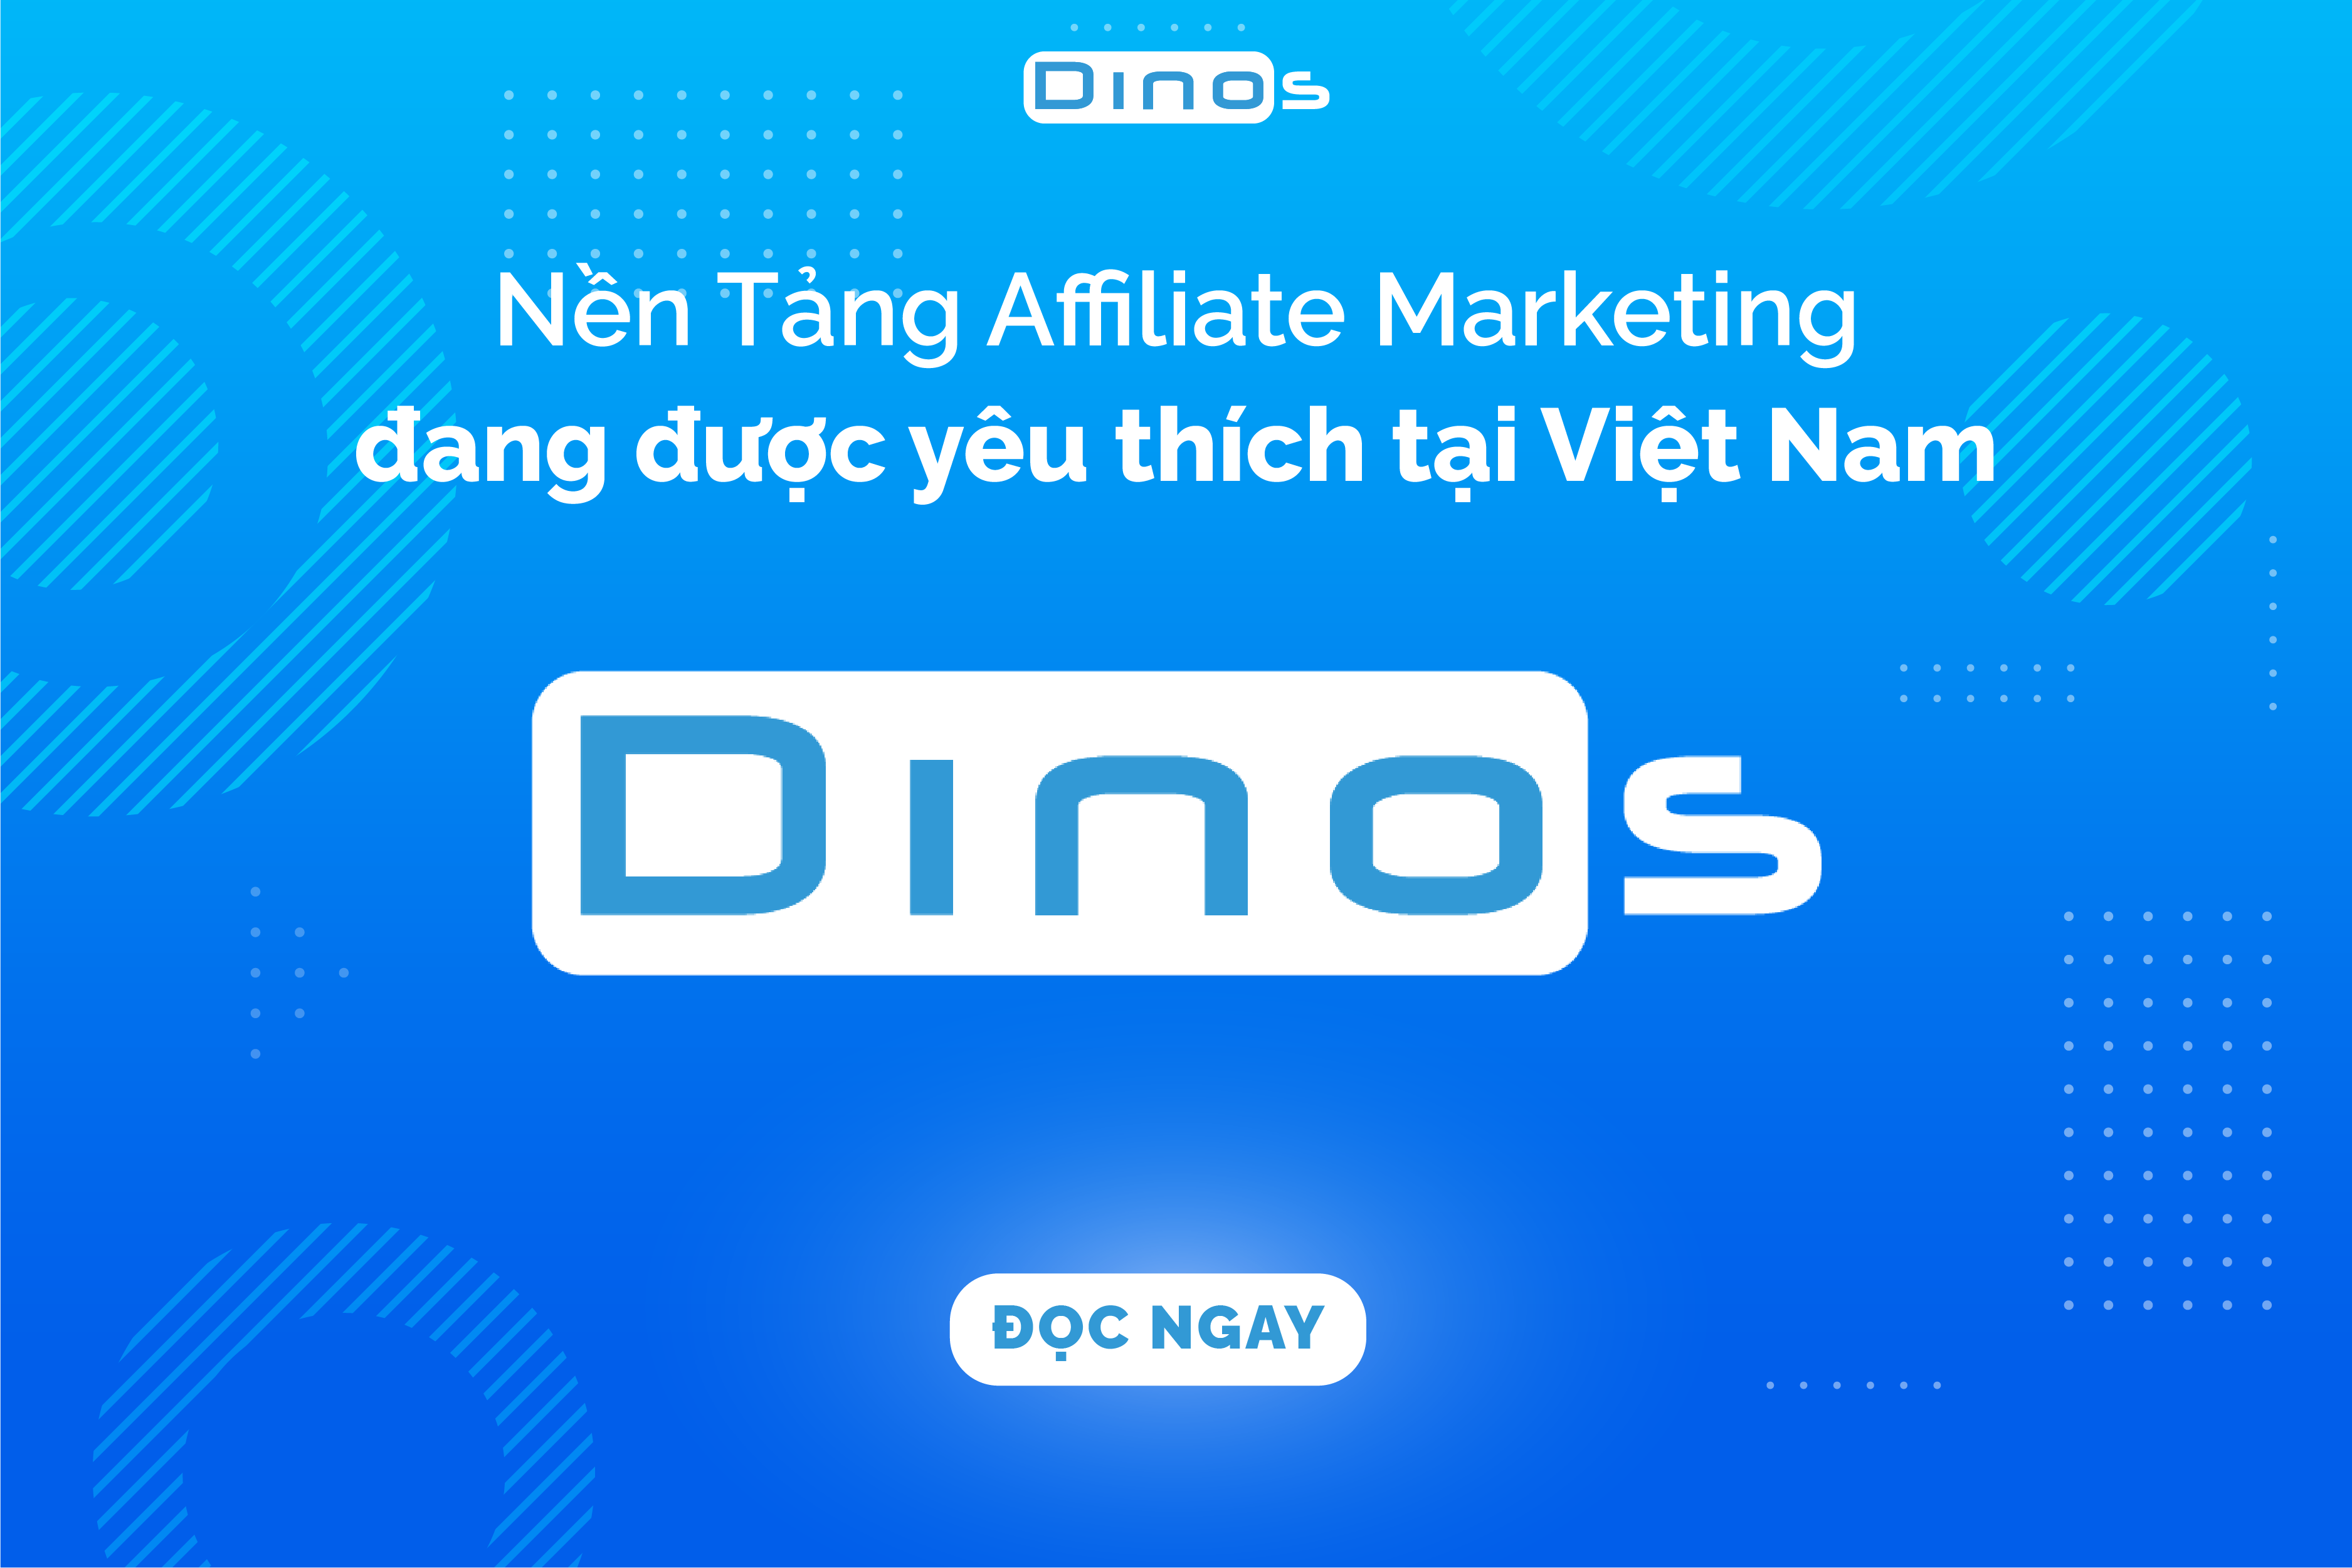 Dinos – Nền Tảng Tiếp Thị Liên Kết Được Yêu Thích Tại Việt Nam